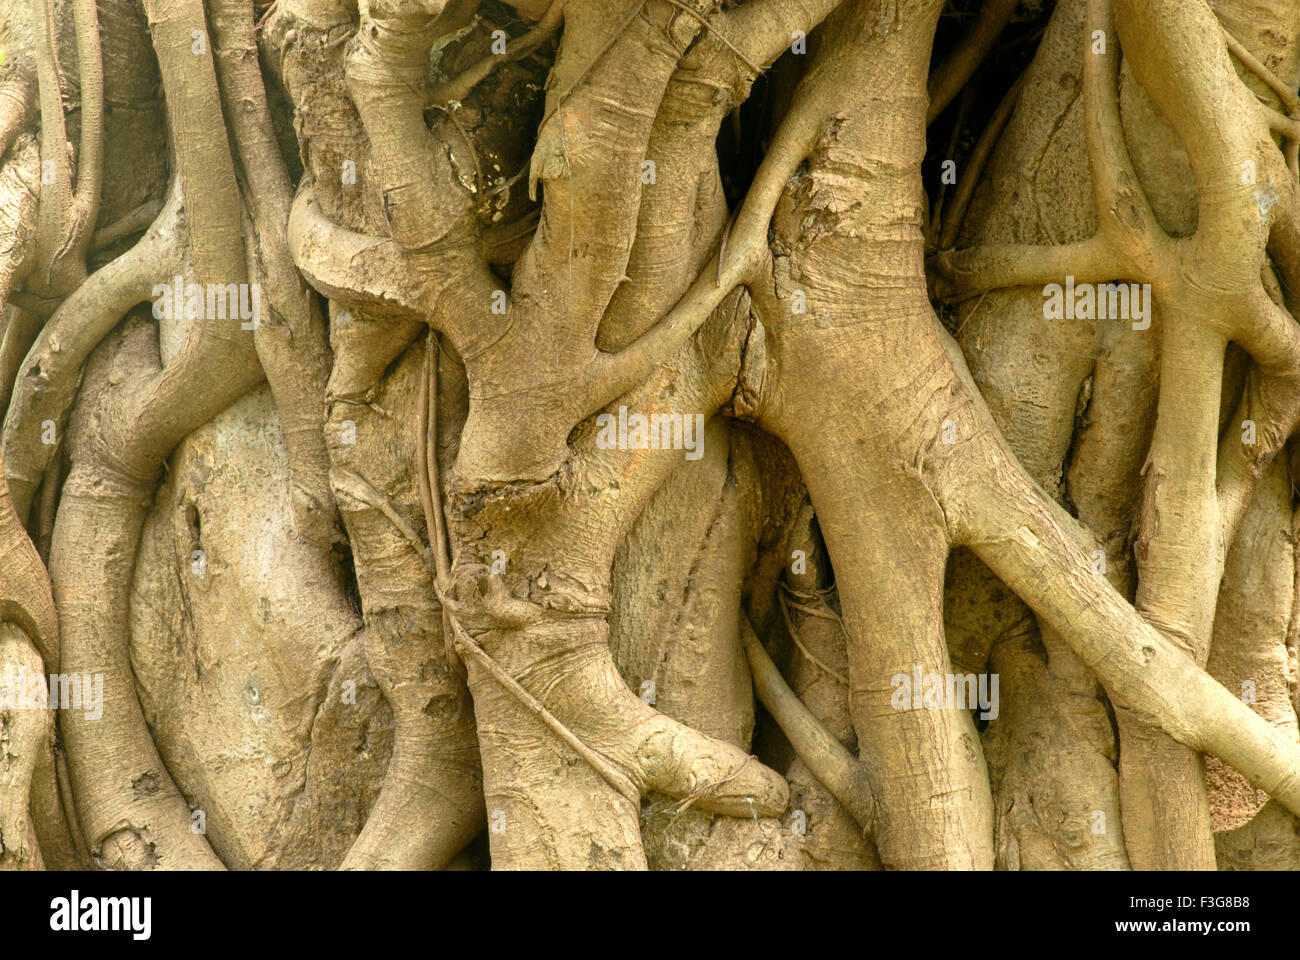 Fest der riesige Kofferraum des sehr alten Banyan-Baum-Form von absteigend Wurzeln indischen Feigen hautnah Stockfoto